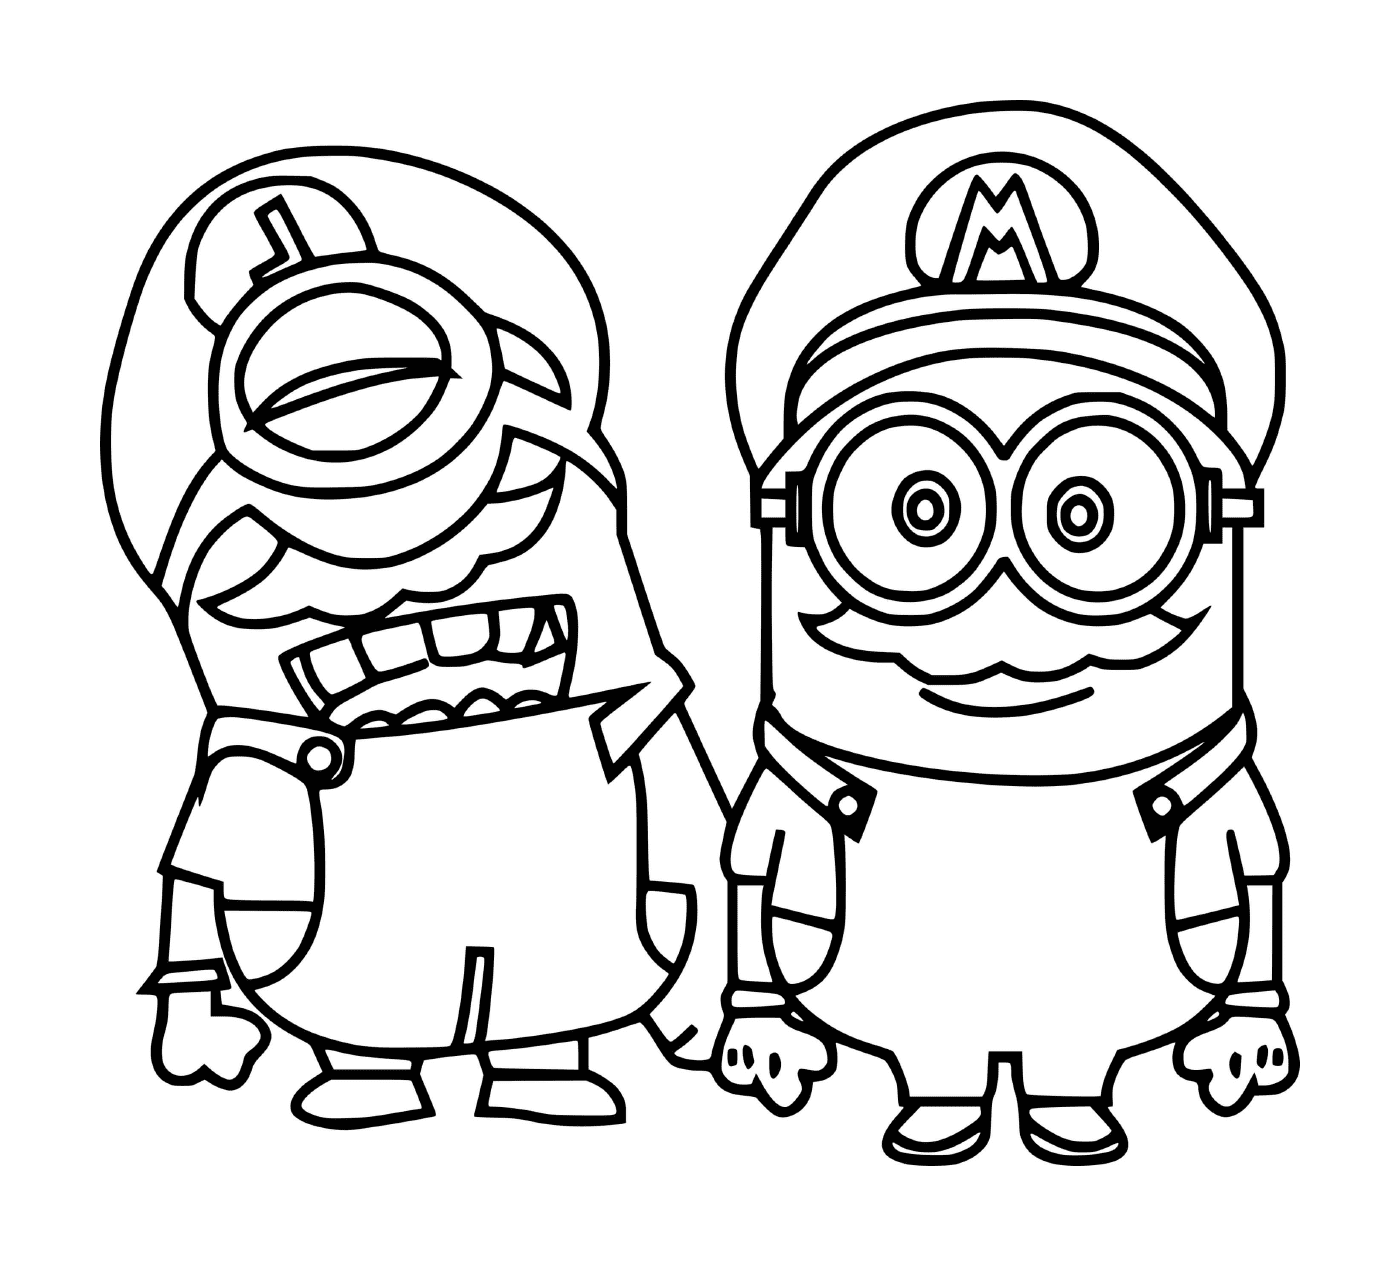  Mario Minions zusammen 